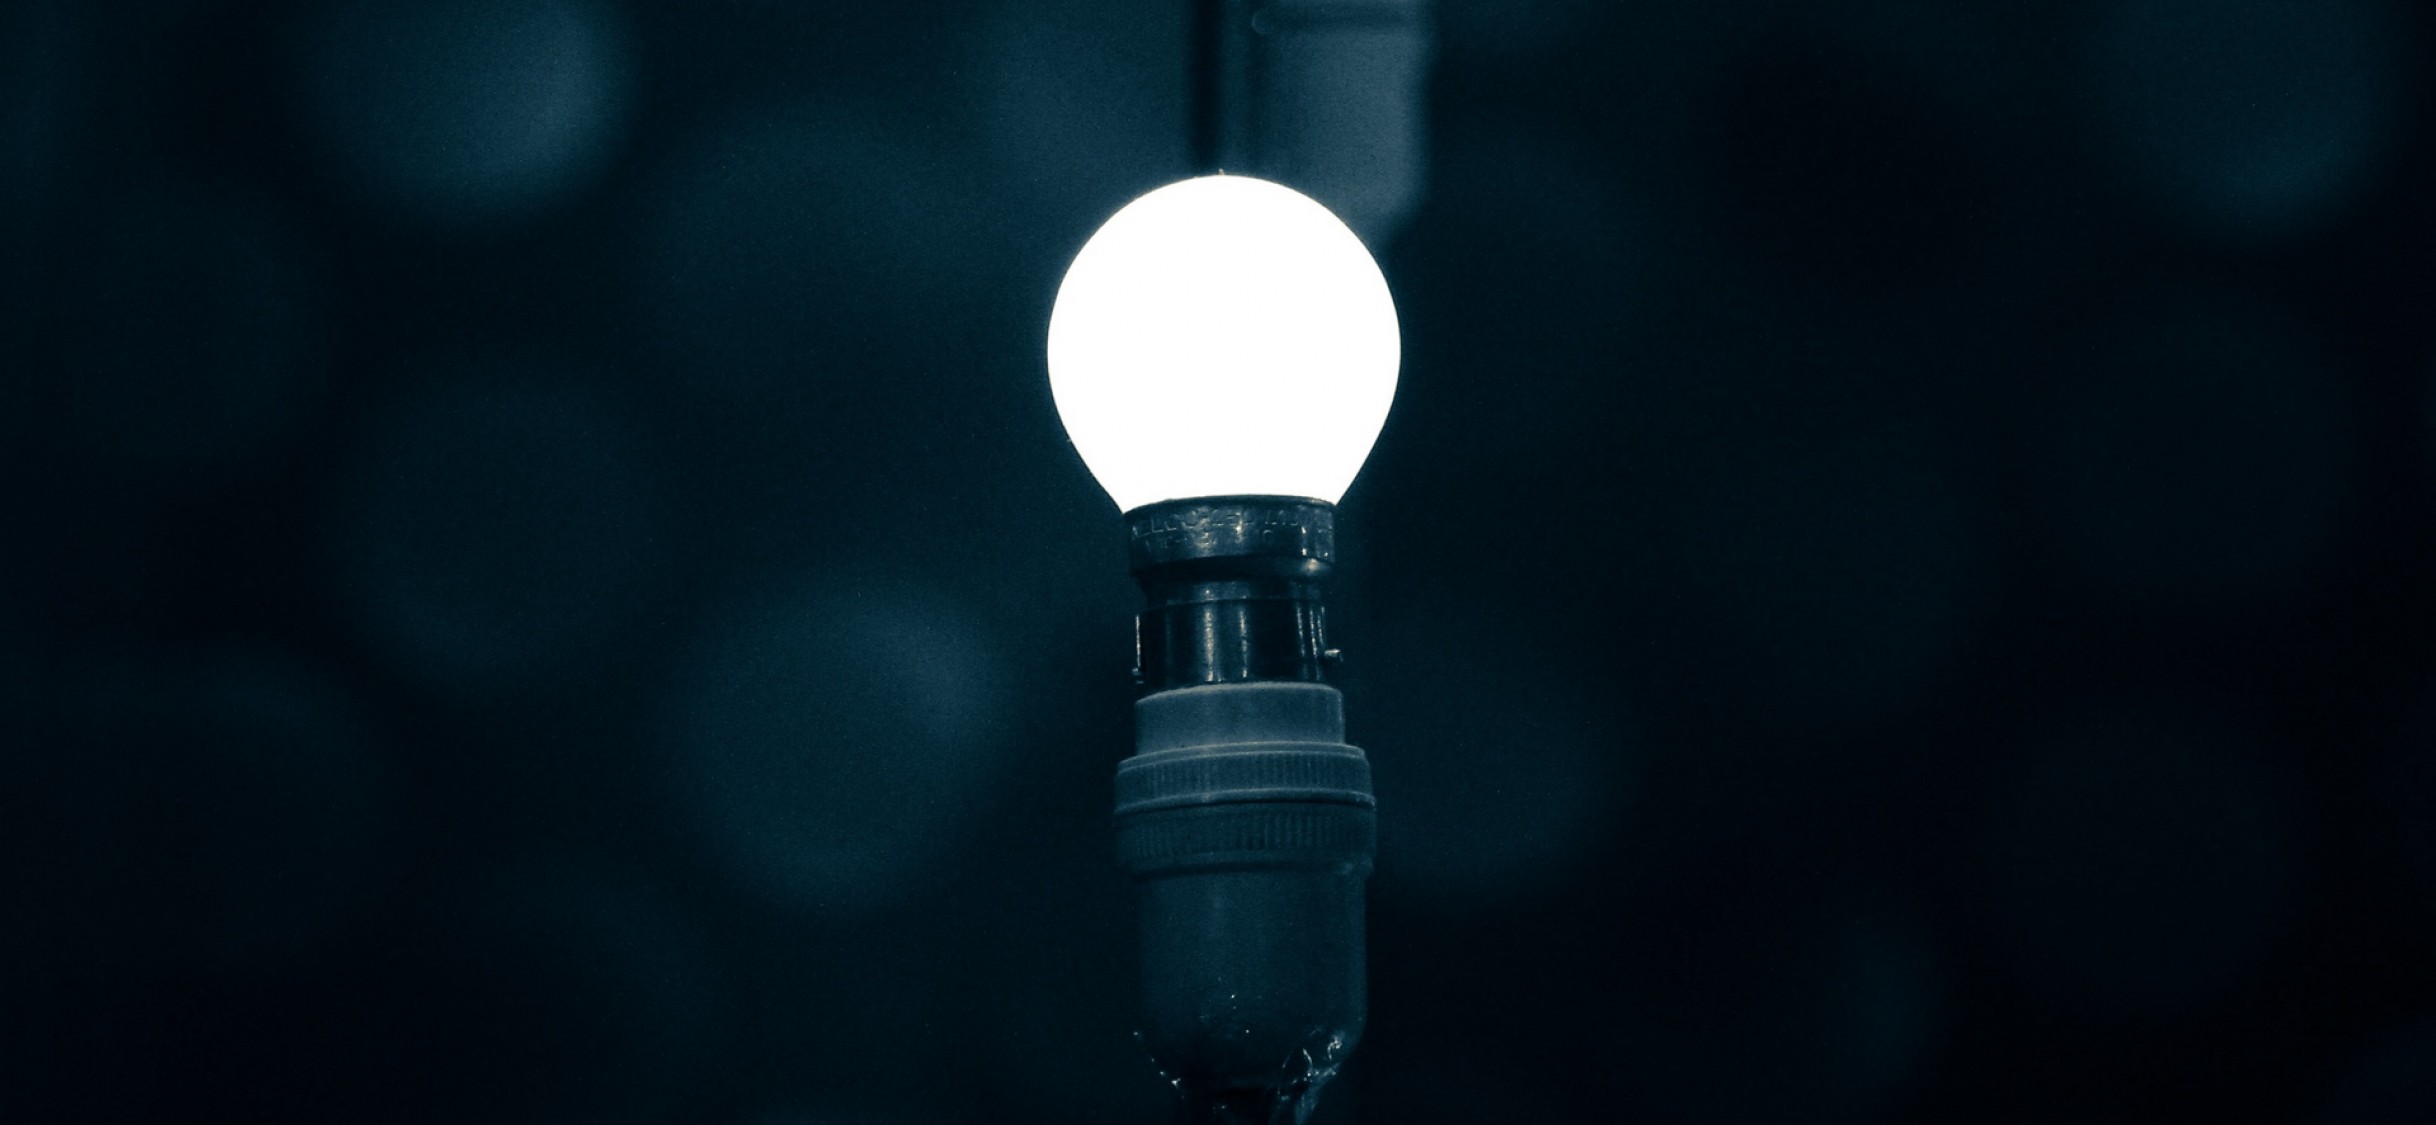 Light bulb at the dark HD Wallpaper